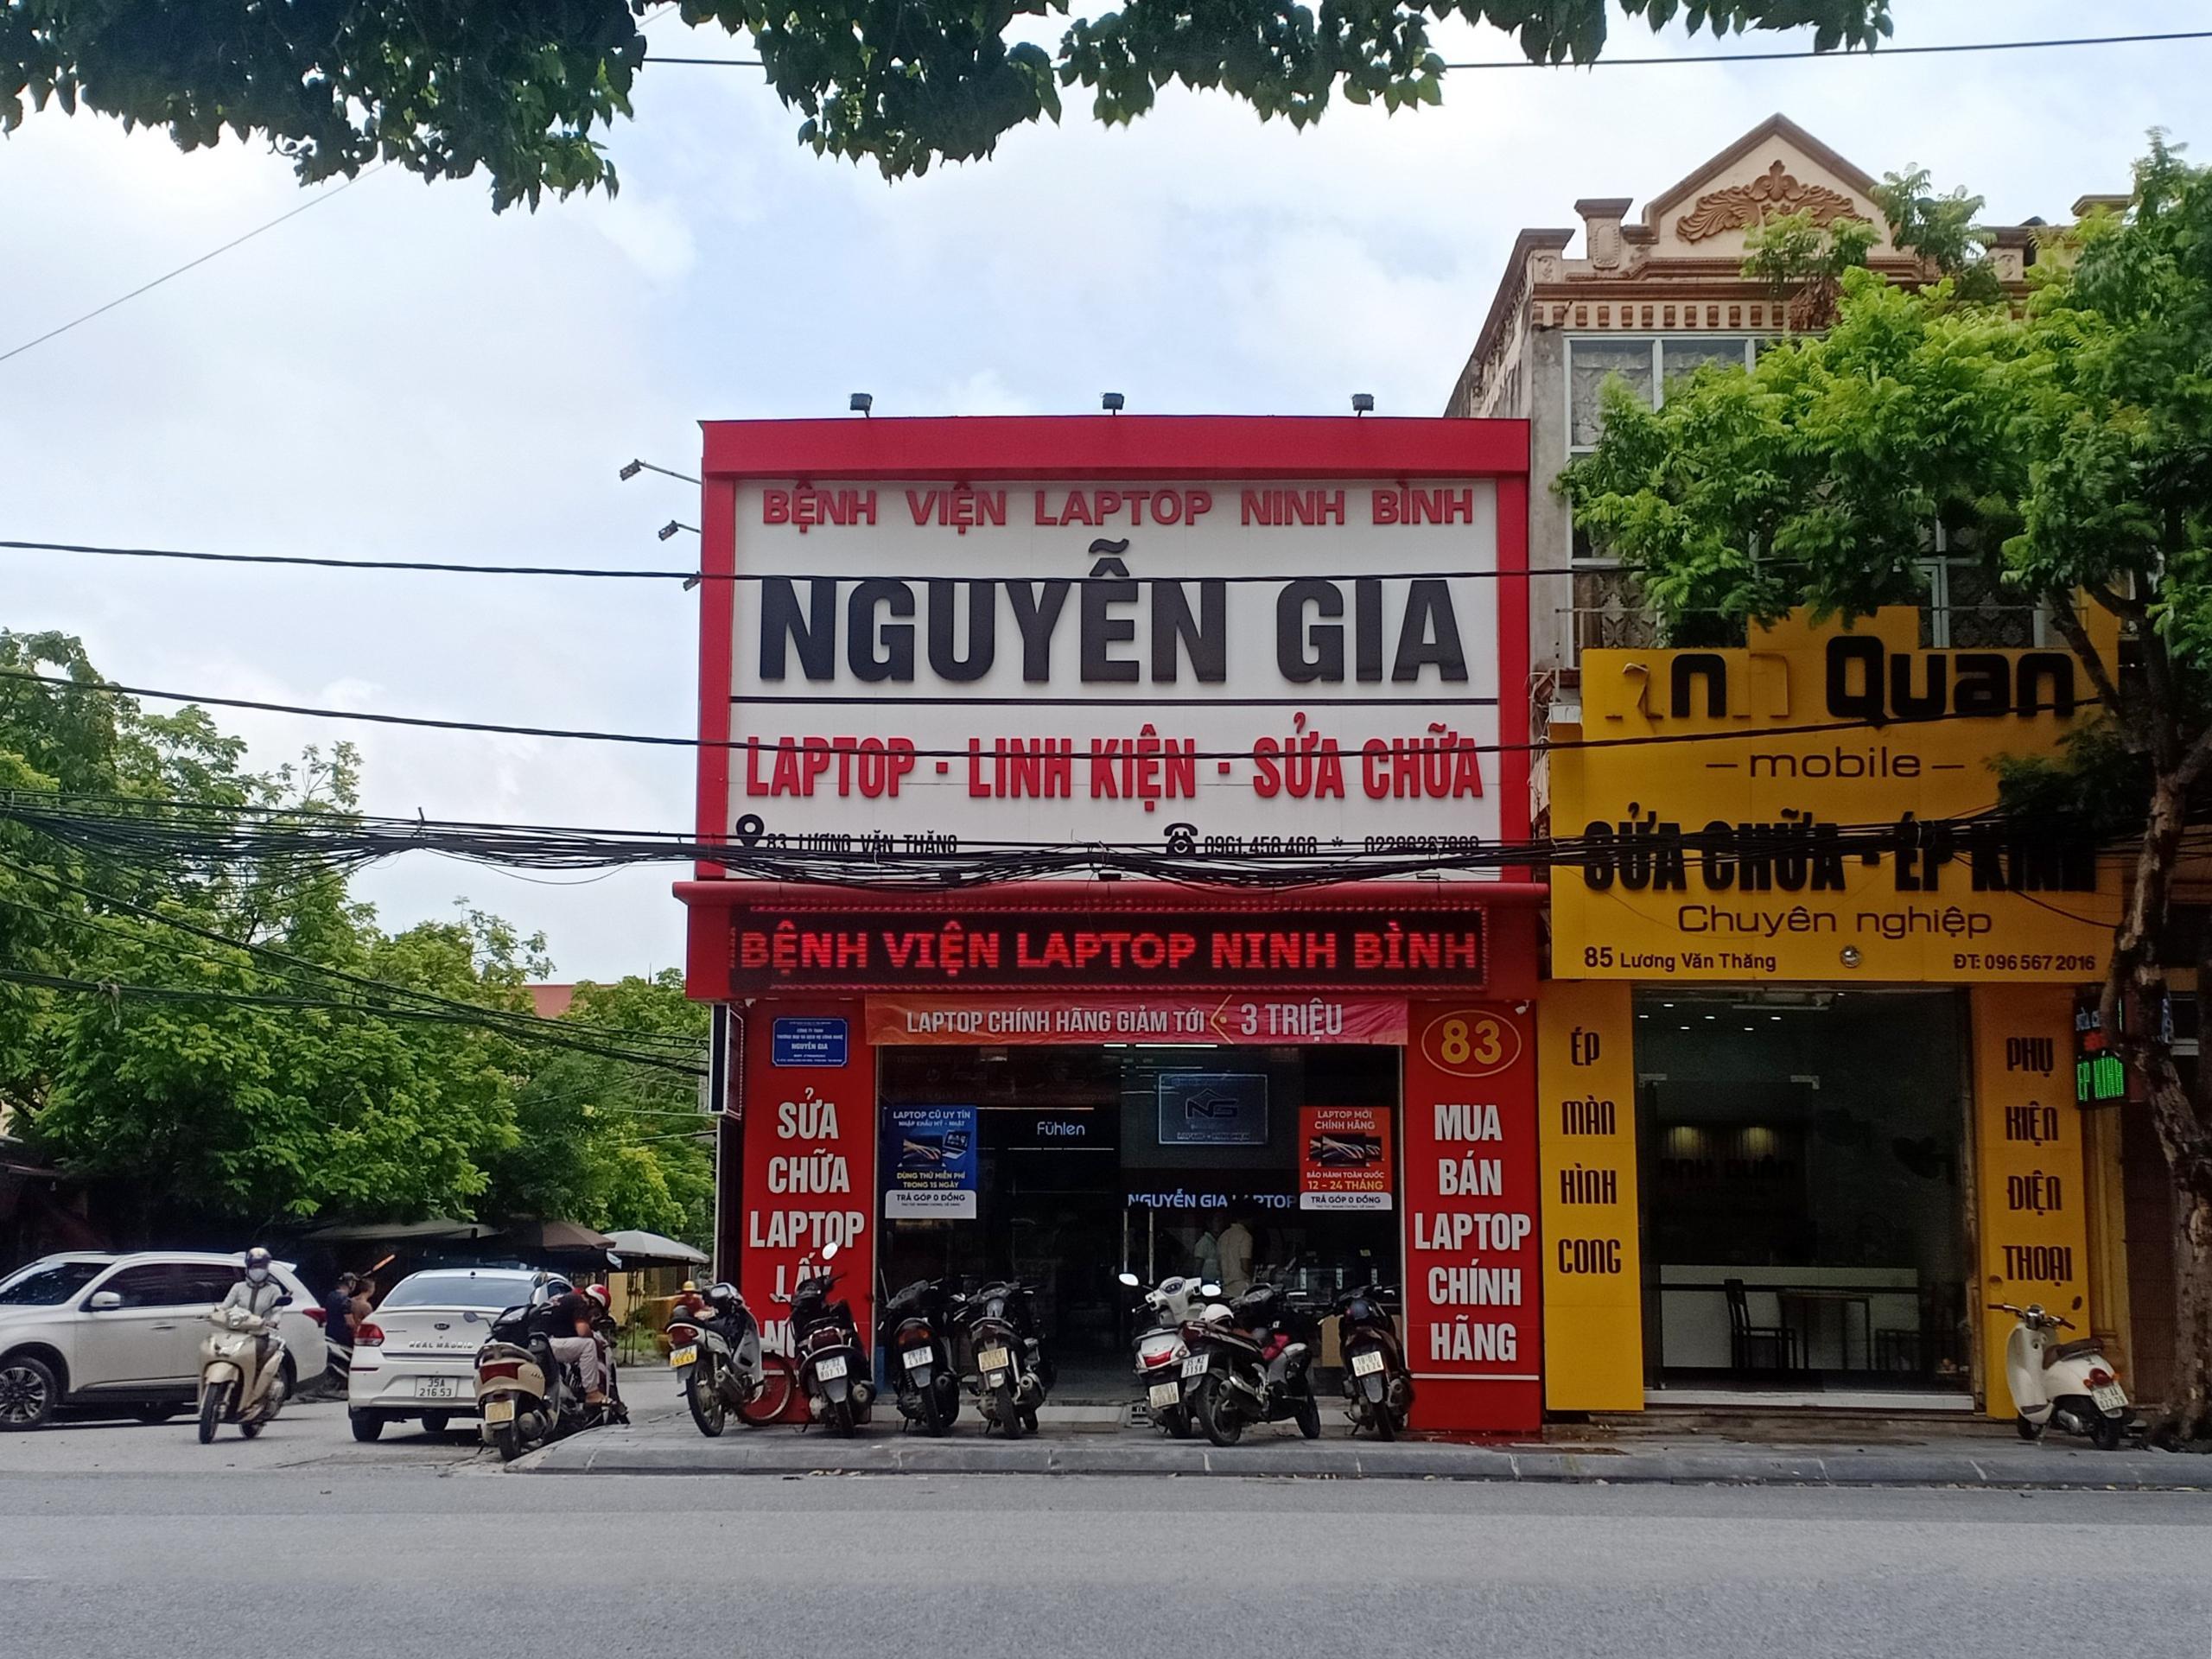 Sửa chữa, mua bán linh kiện laptop uy tín, chất lượng tại Nguyễn Gia Laptop – Bệnh viện Laptop số 1 Ninh Bình